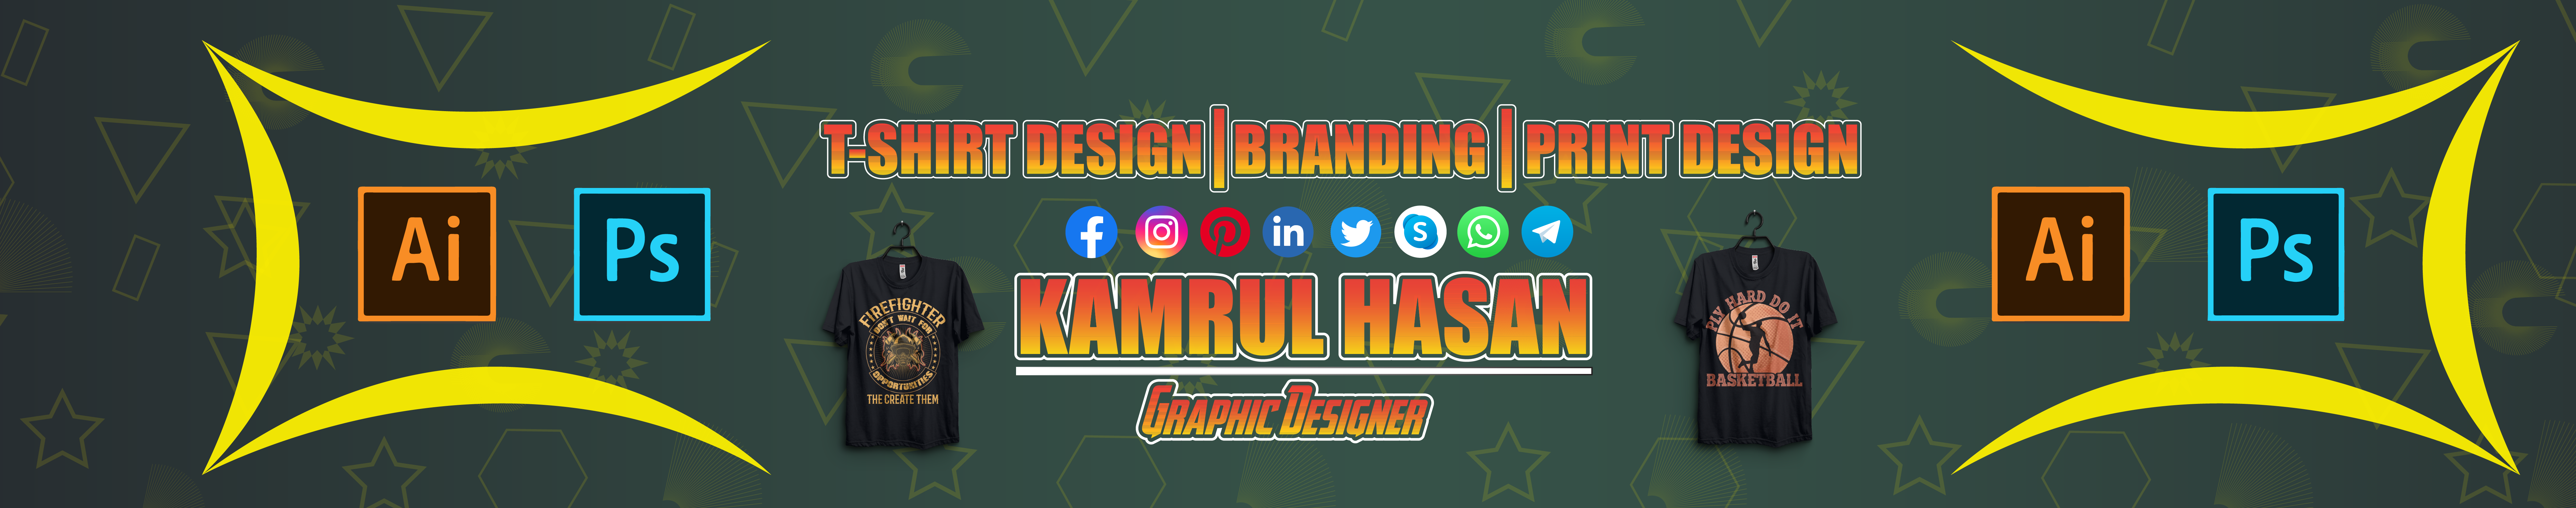 Banner del profilo di Kamrul Hasan